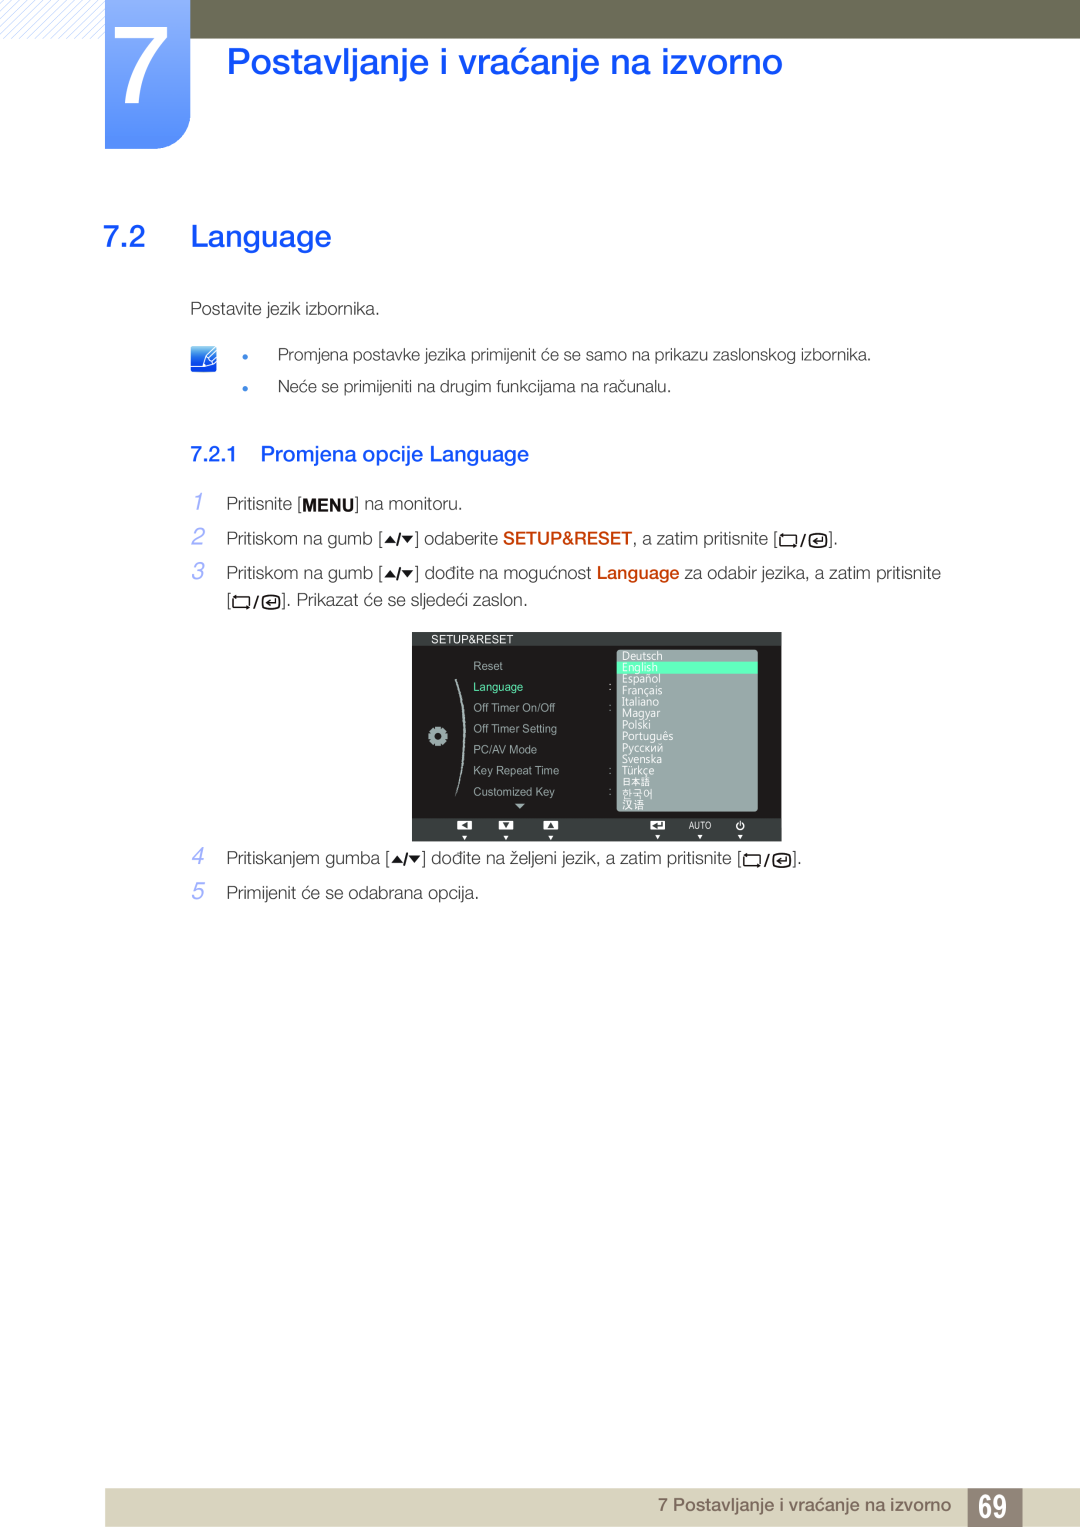 Samsung LF24TSWTBDN/EN, LF19TSWTBDN/EN, LF22TSWTBDN/EN Promjena opcije Language, Postavljanje i vraćanje na izvorno 